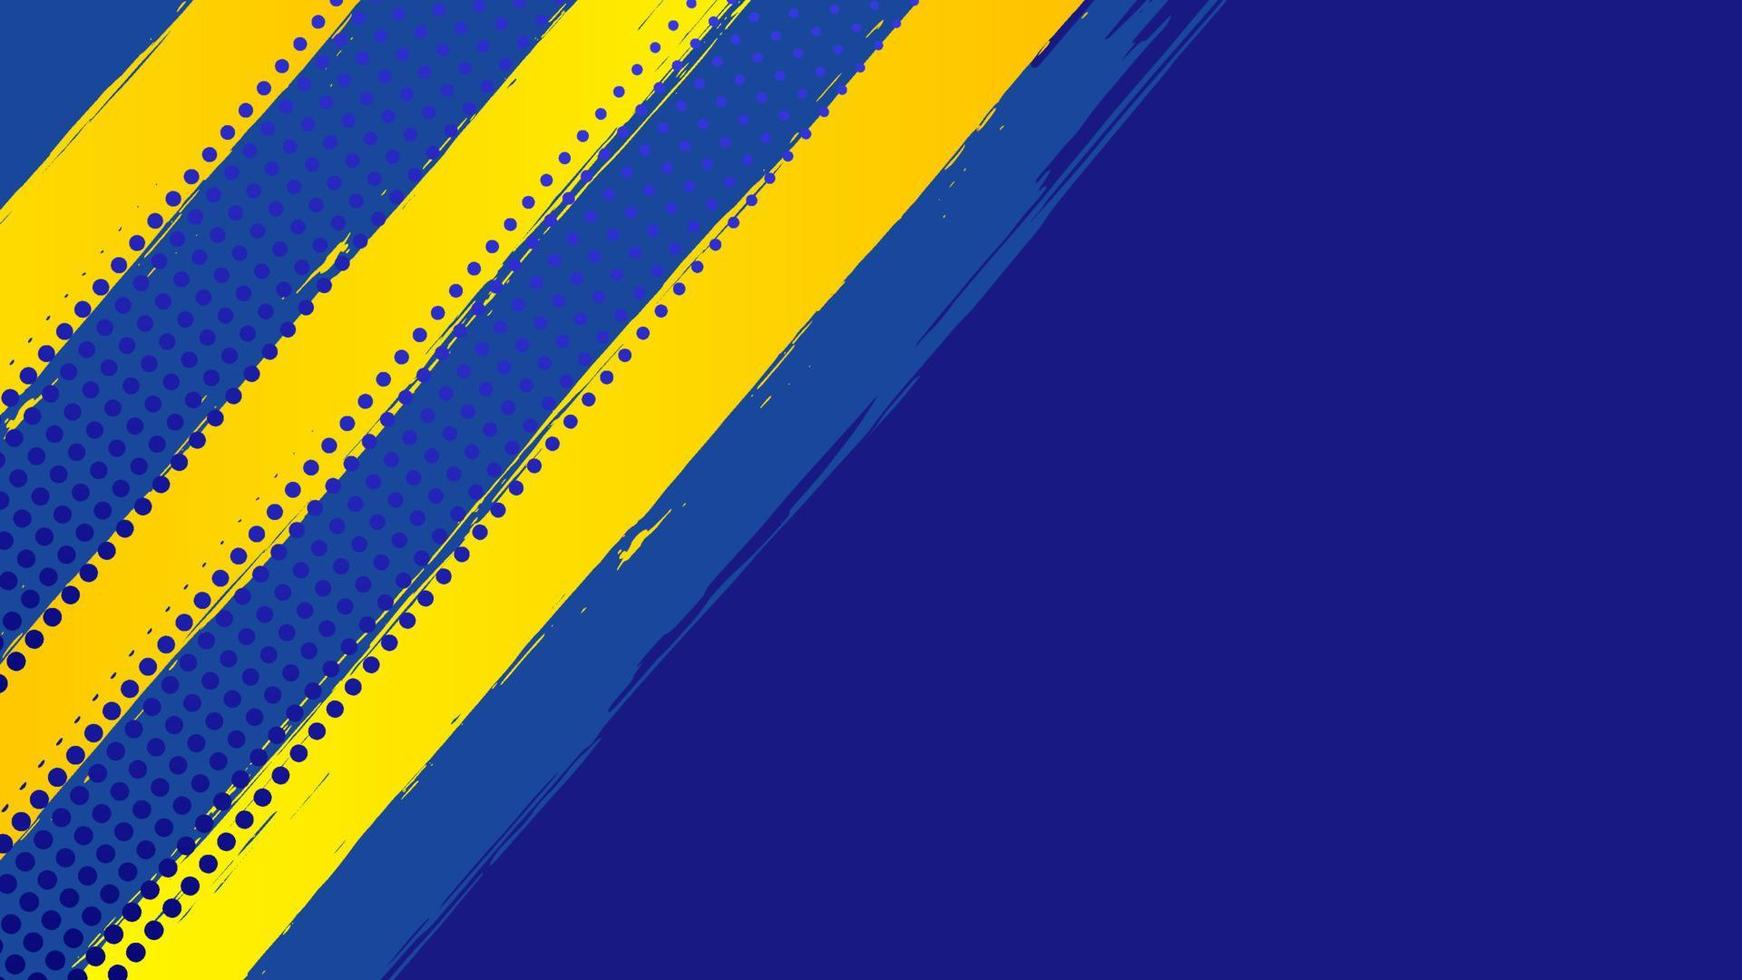 vector de fondo de grunge abstracto con pincel de pintura y efecto de medio tono, banner de diseño de plantilla con color azul degradado y amarillo de la bandera de ucrania